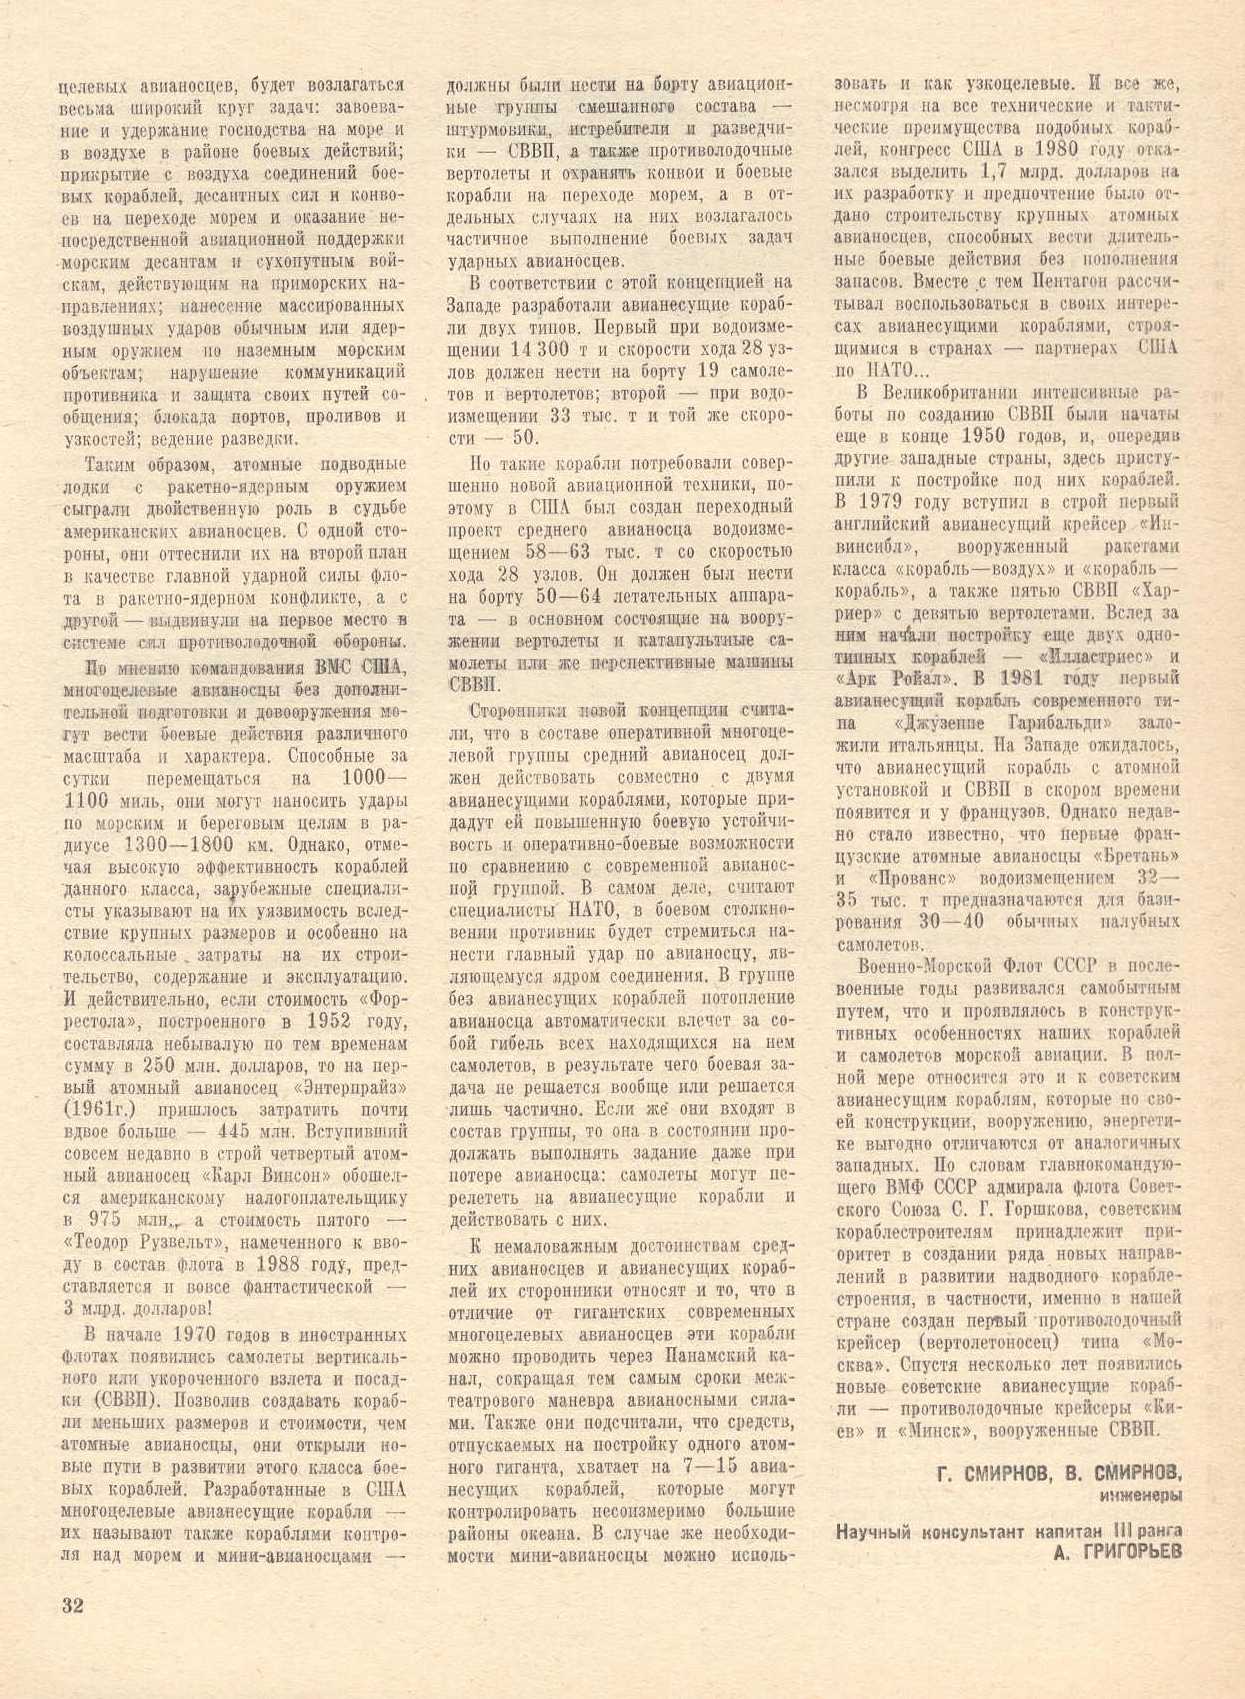 МК 3, 1983, 32 c.